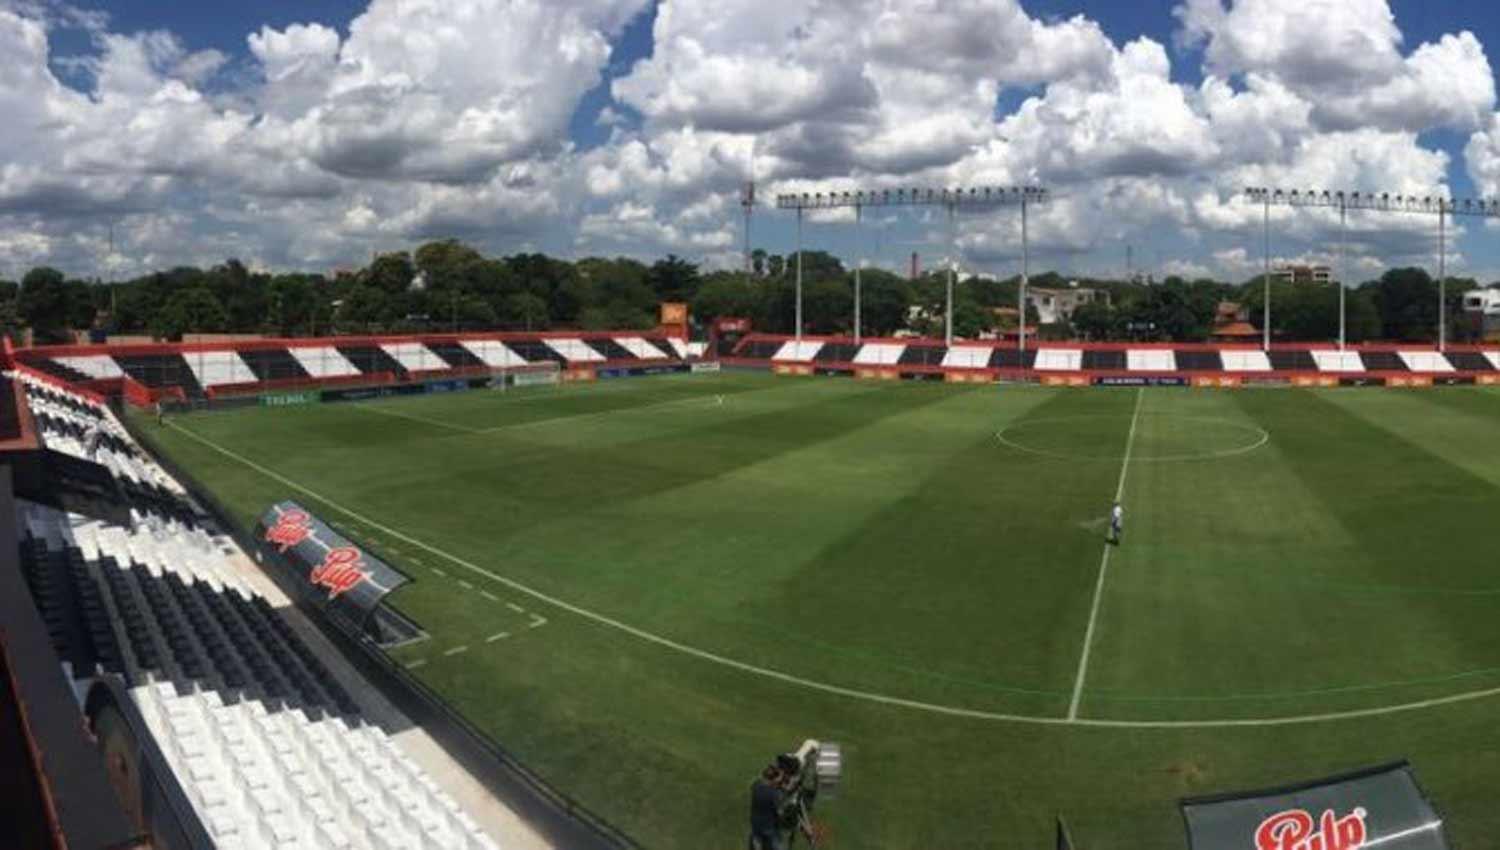 UNA CABECERA. El estadio Nicolás Leoz cuenta con 12.000 localidades y los tucumanos serían ubicados en una de las tribunas populares. FOTO TOMADA DE ABC.COM.PY